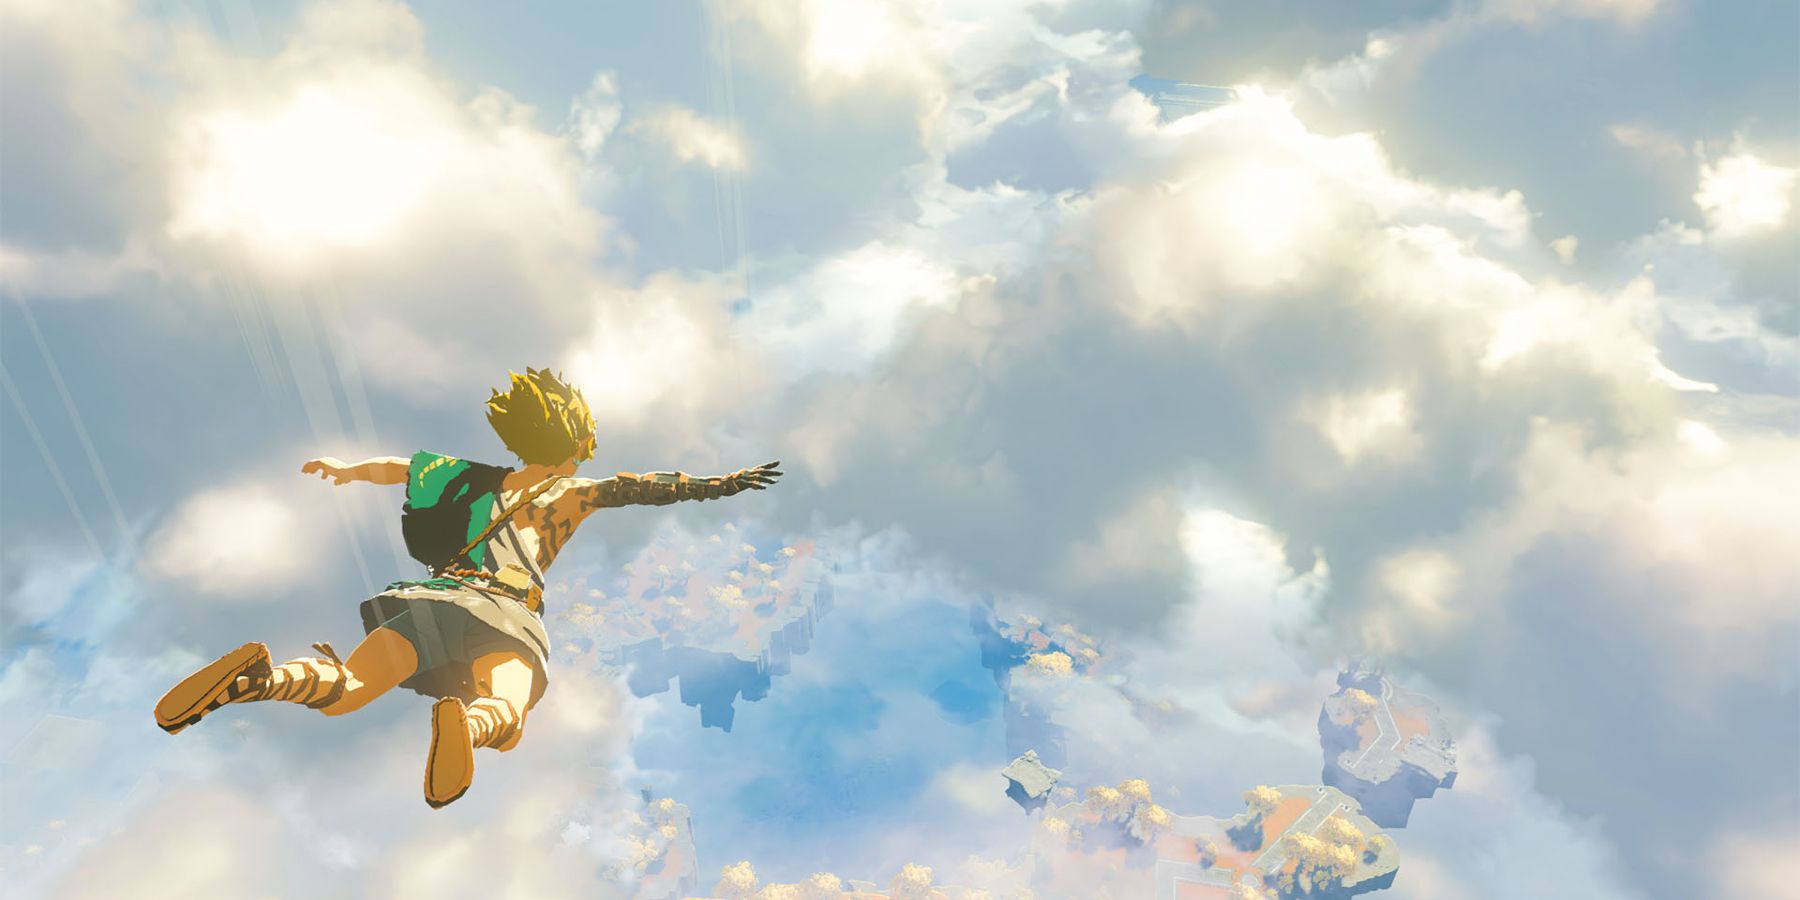 Zelda: A Breath of the Wild 2 hivatalos név feltárja a következő Nintendo Direct -en várhatóan